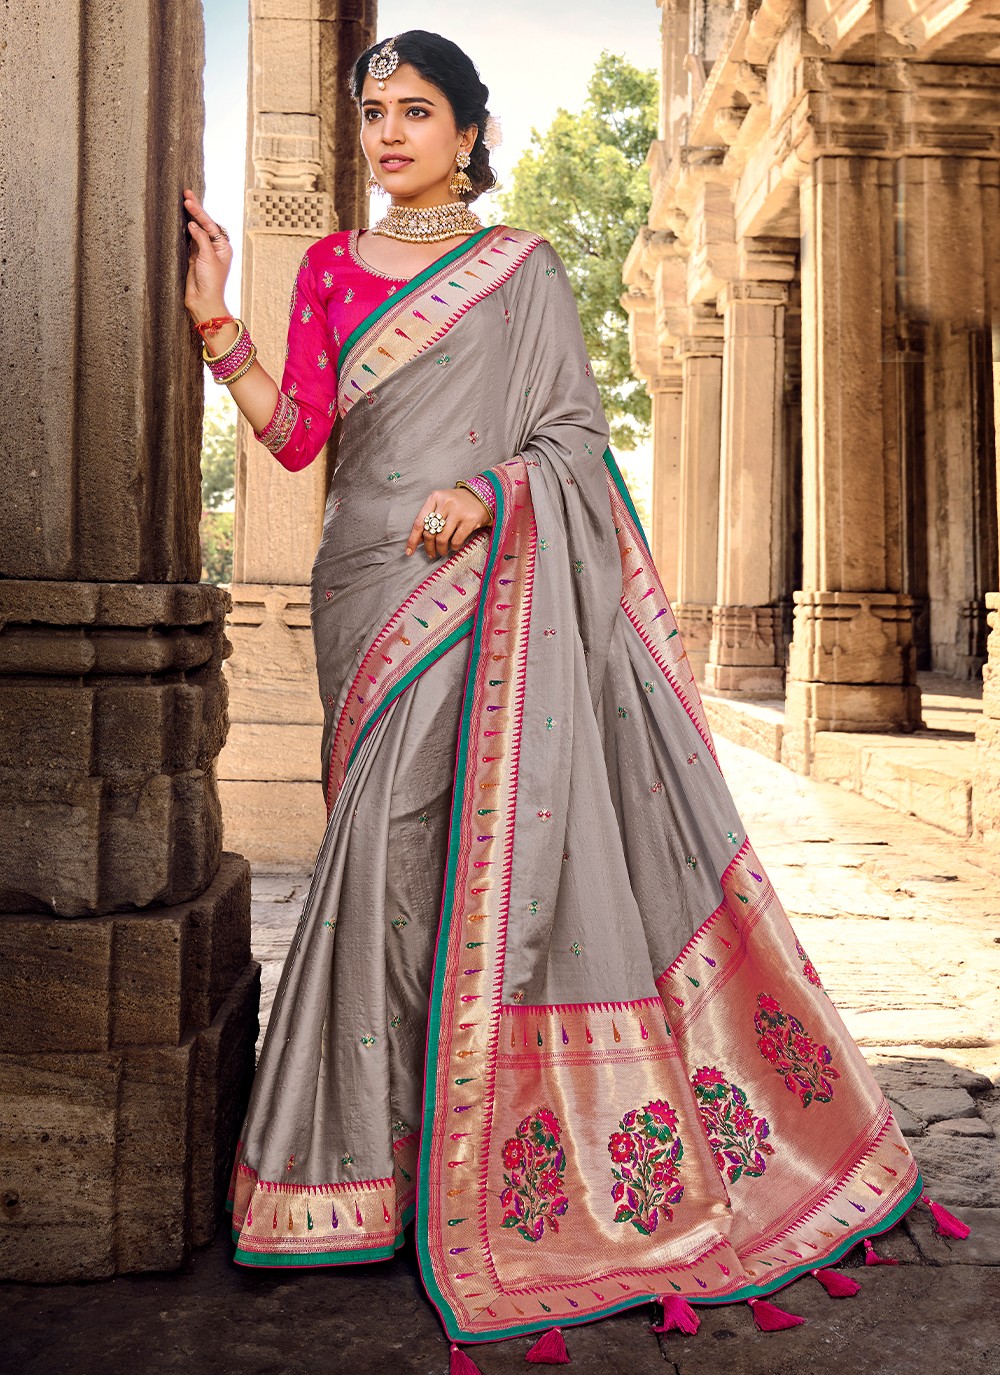 Banarasi Silk Weaving Classic Saree